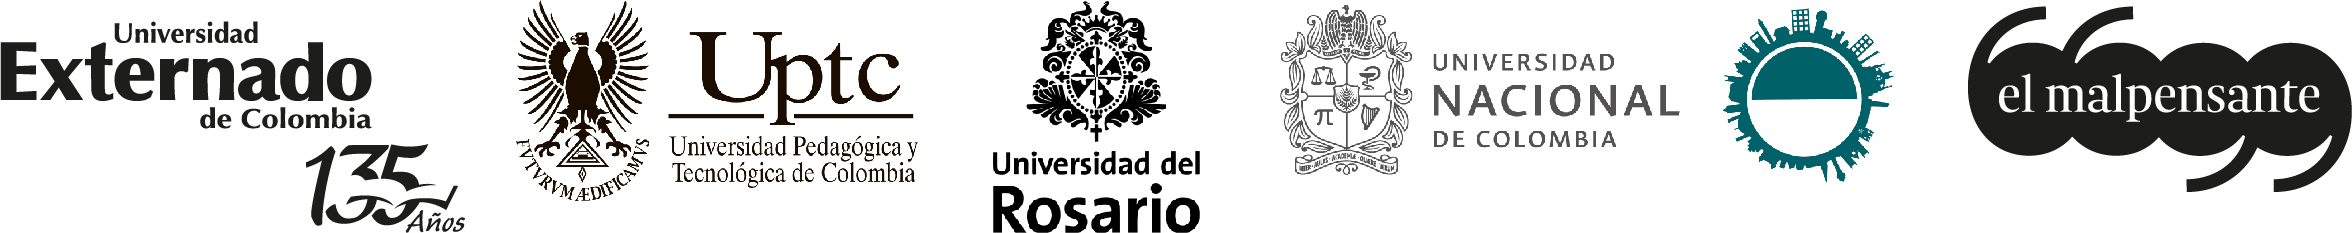 Logos alianza